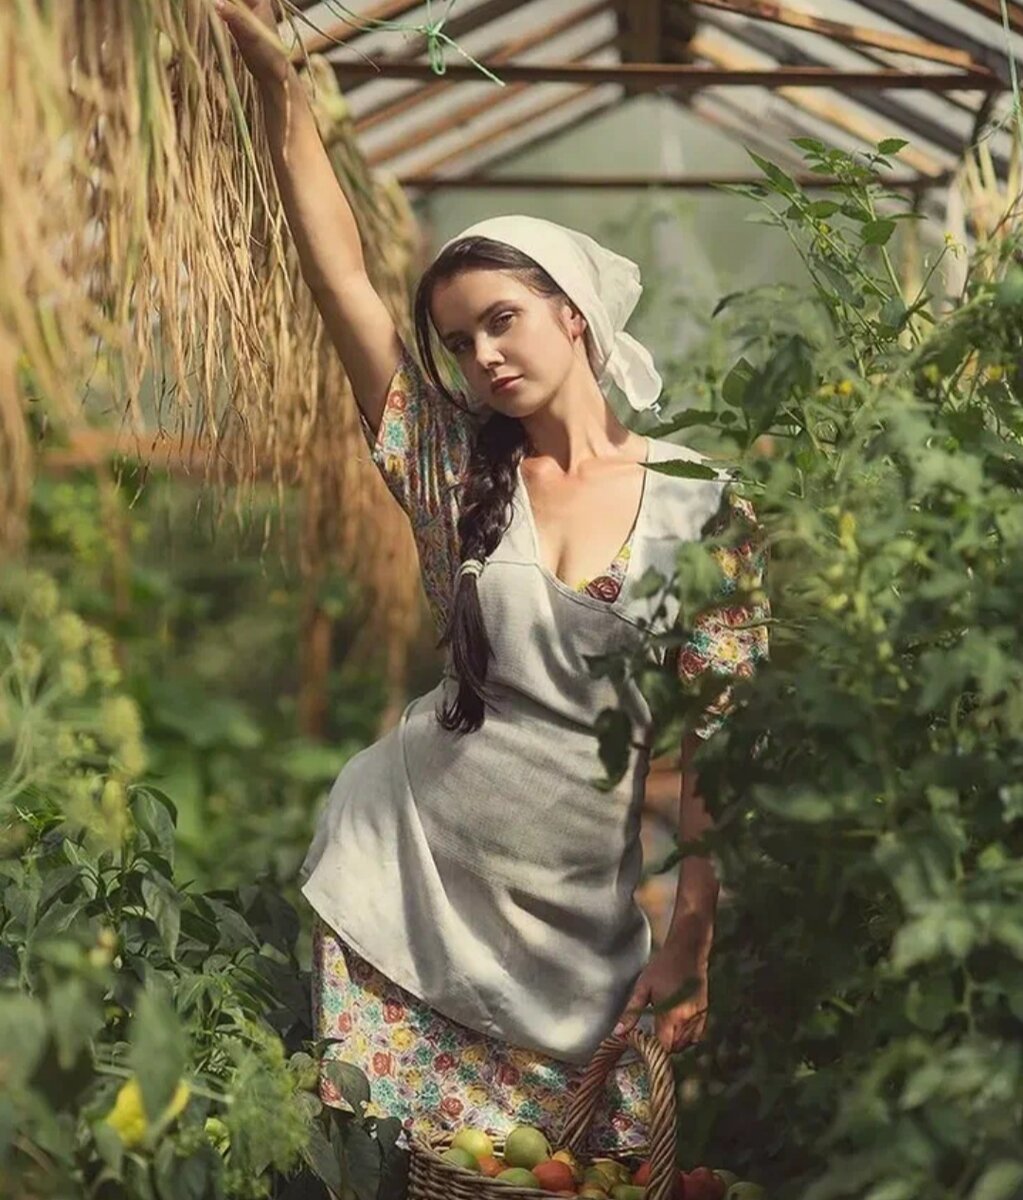 Деревенская женщина дома. Ксюша Егорова фотомодель барышня крестьянка. Фотограф Дэвид Дубницкий.